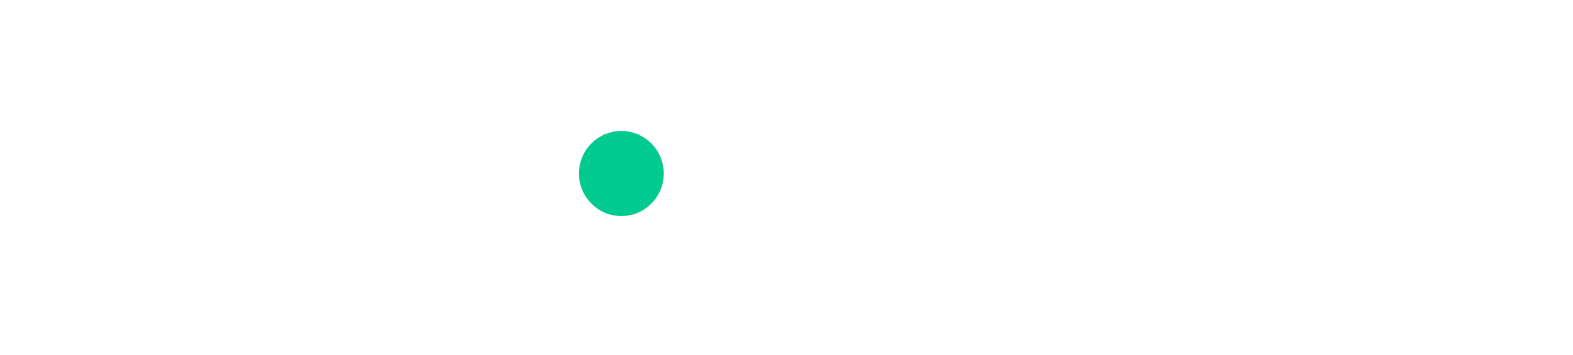 VNET Group logo for dark backgrounds (transparent PNG)